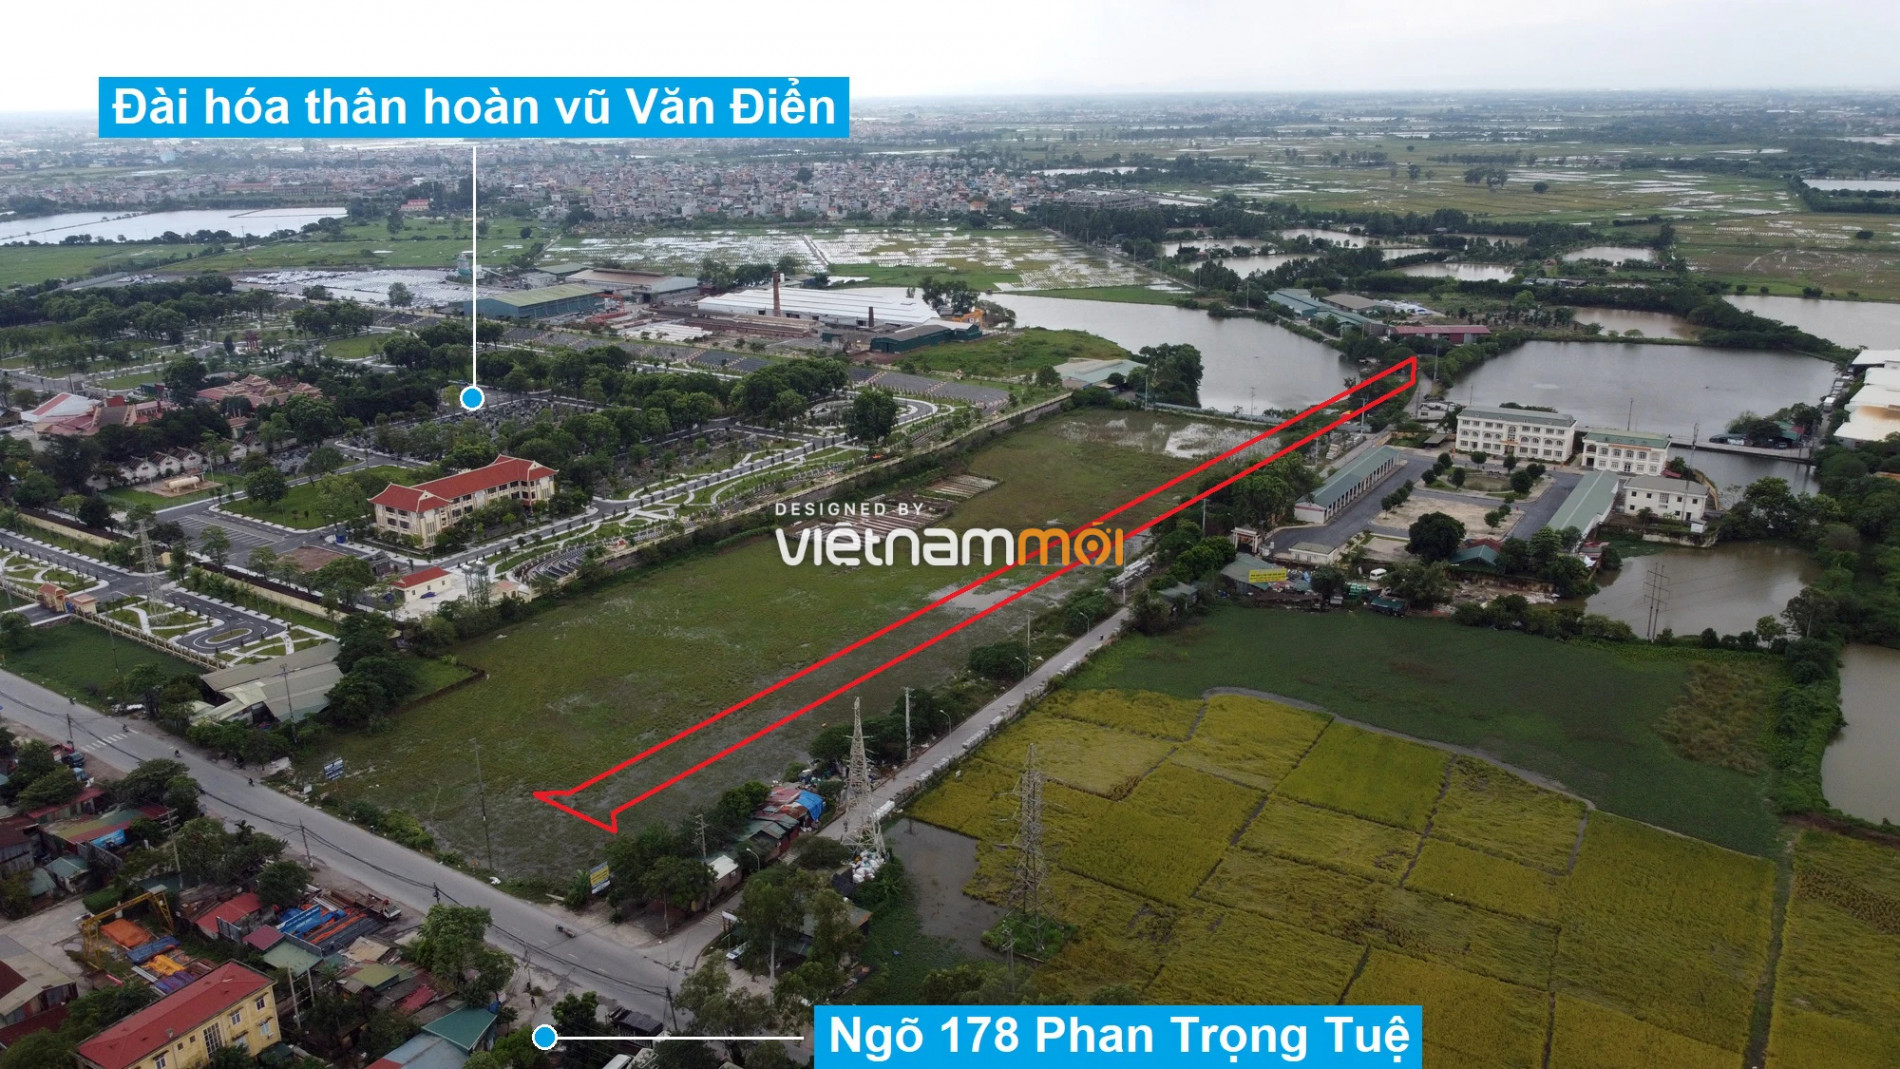 Những khu đất sắp thu hồi để mở đường ở xã Tam Hiệp, Thanh Trì, Hà Nội (phần 5) - Ảnh 6.